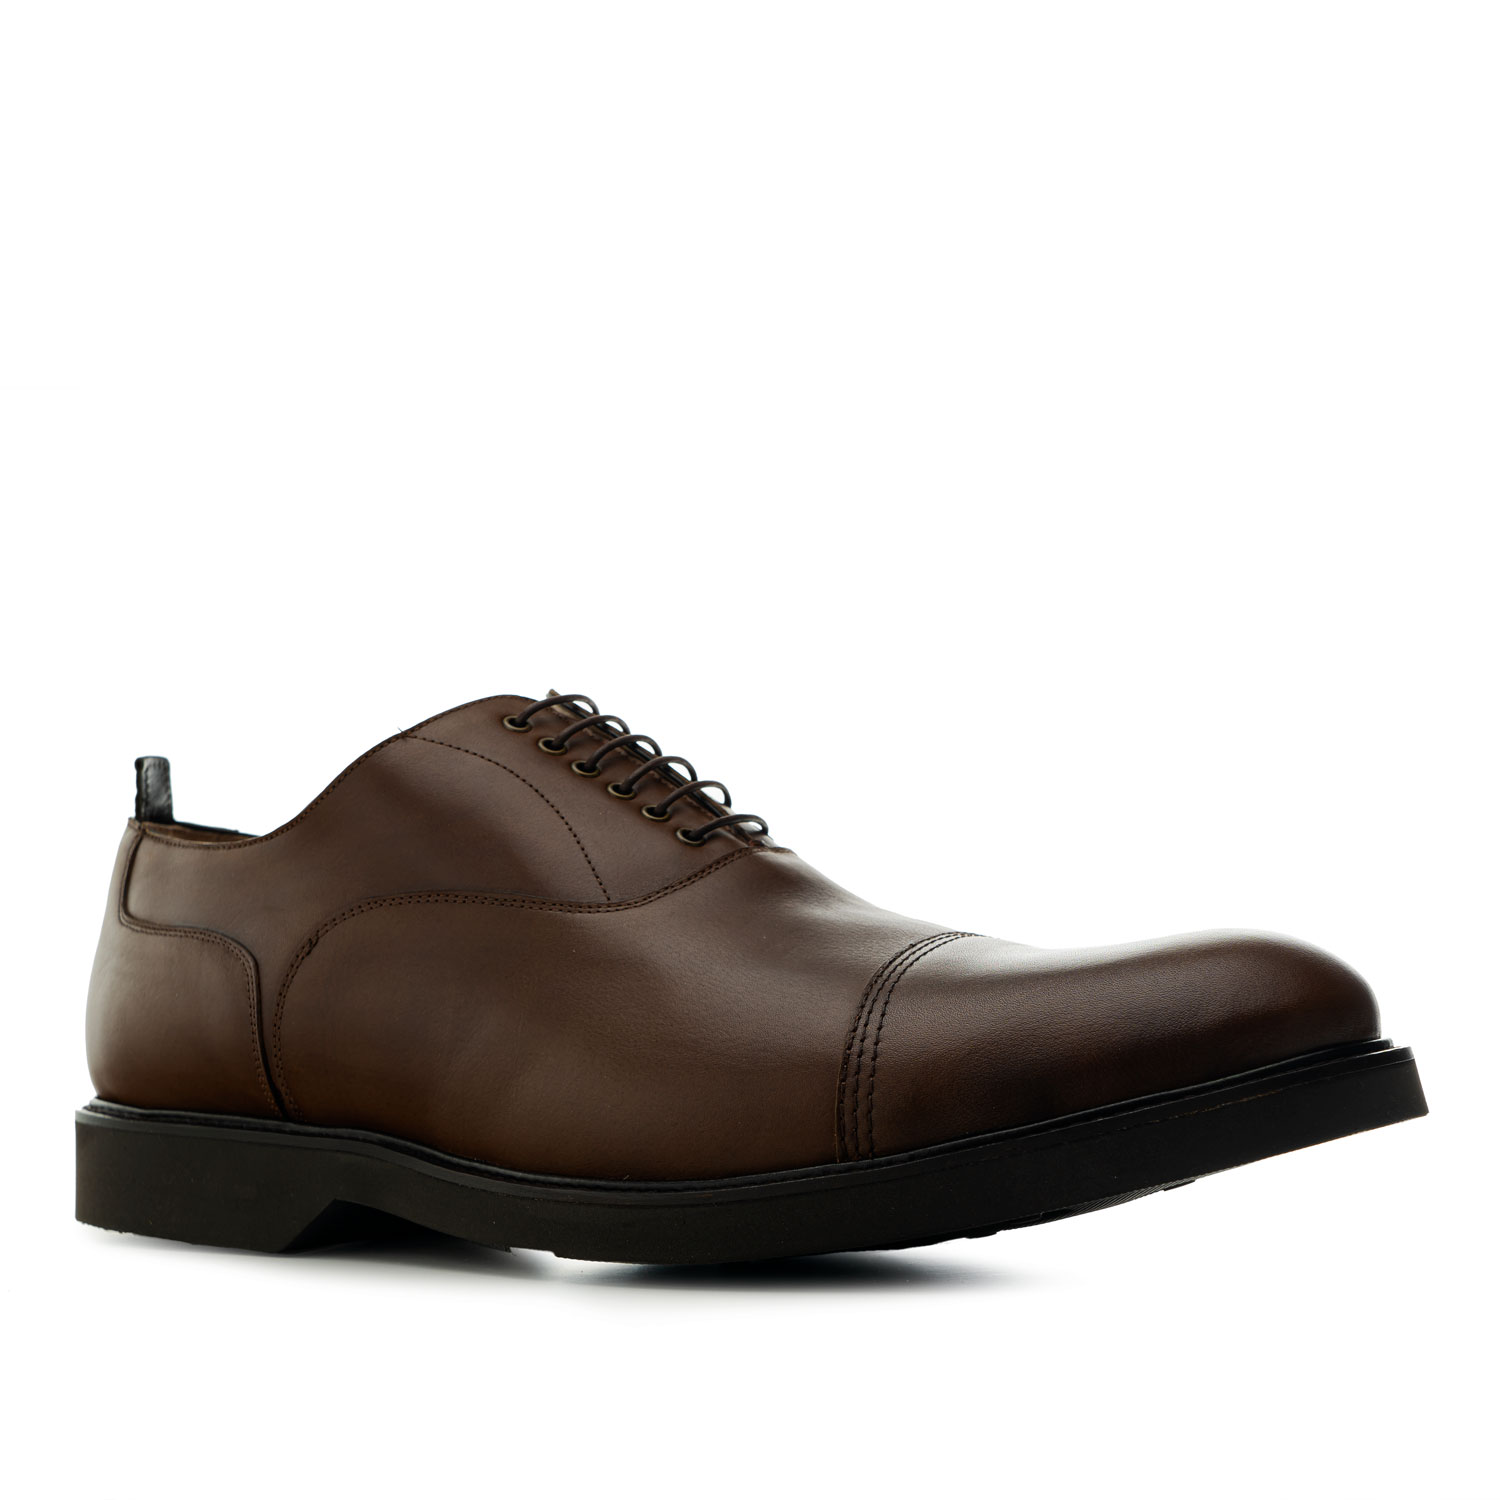 Zapatos estilo Oxford en Cuero de color Marron 